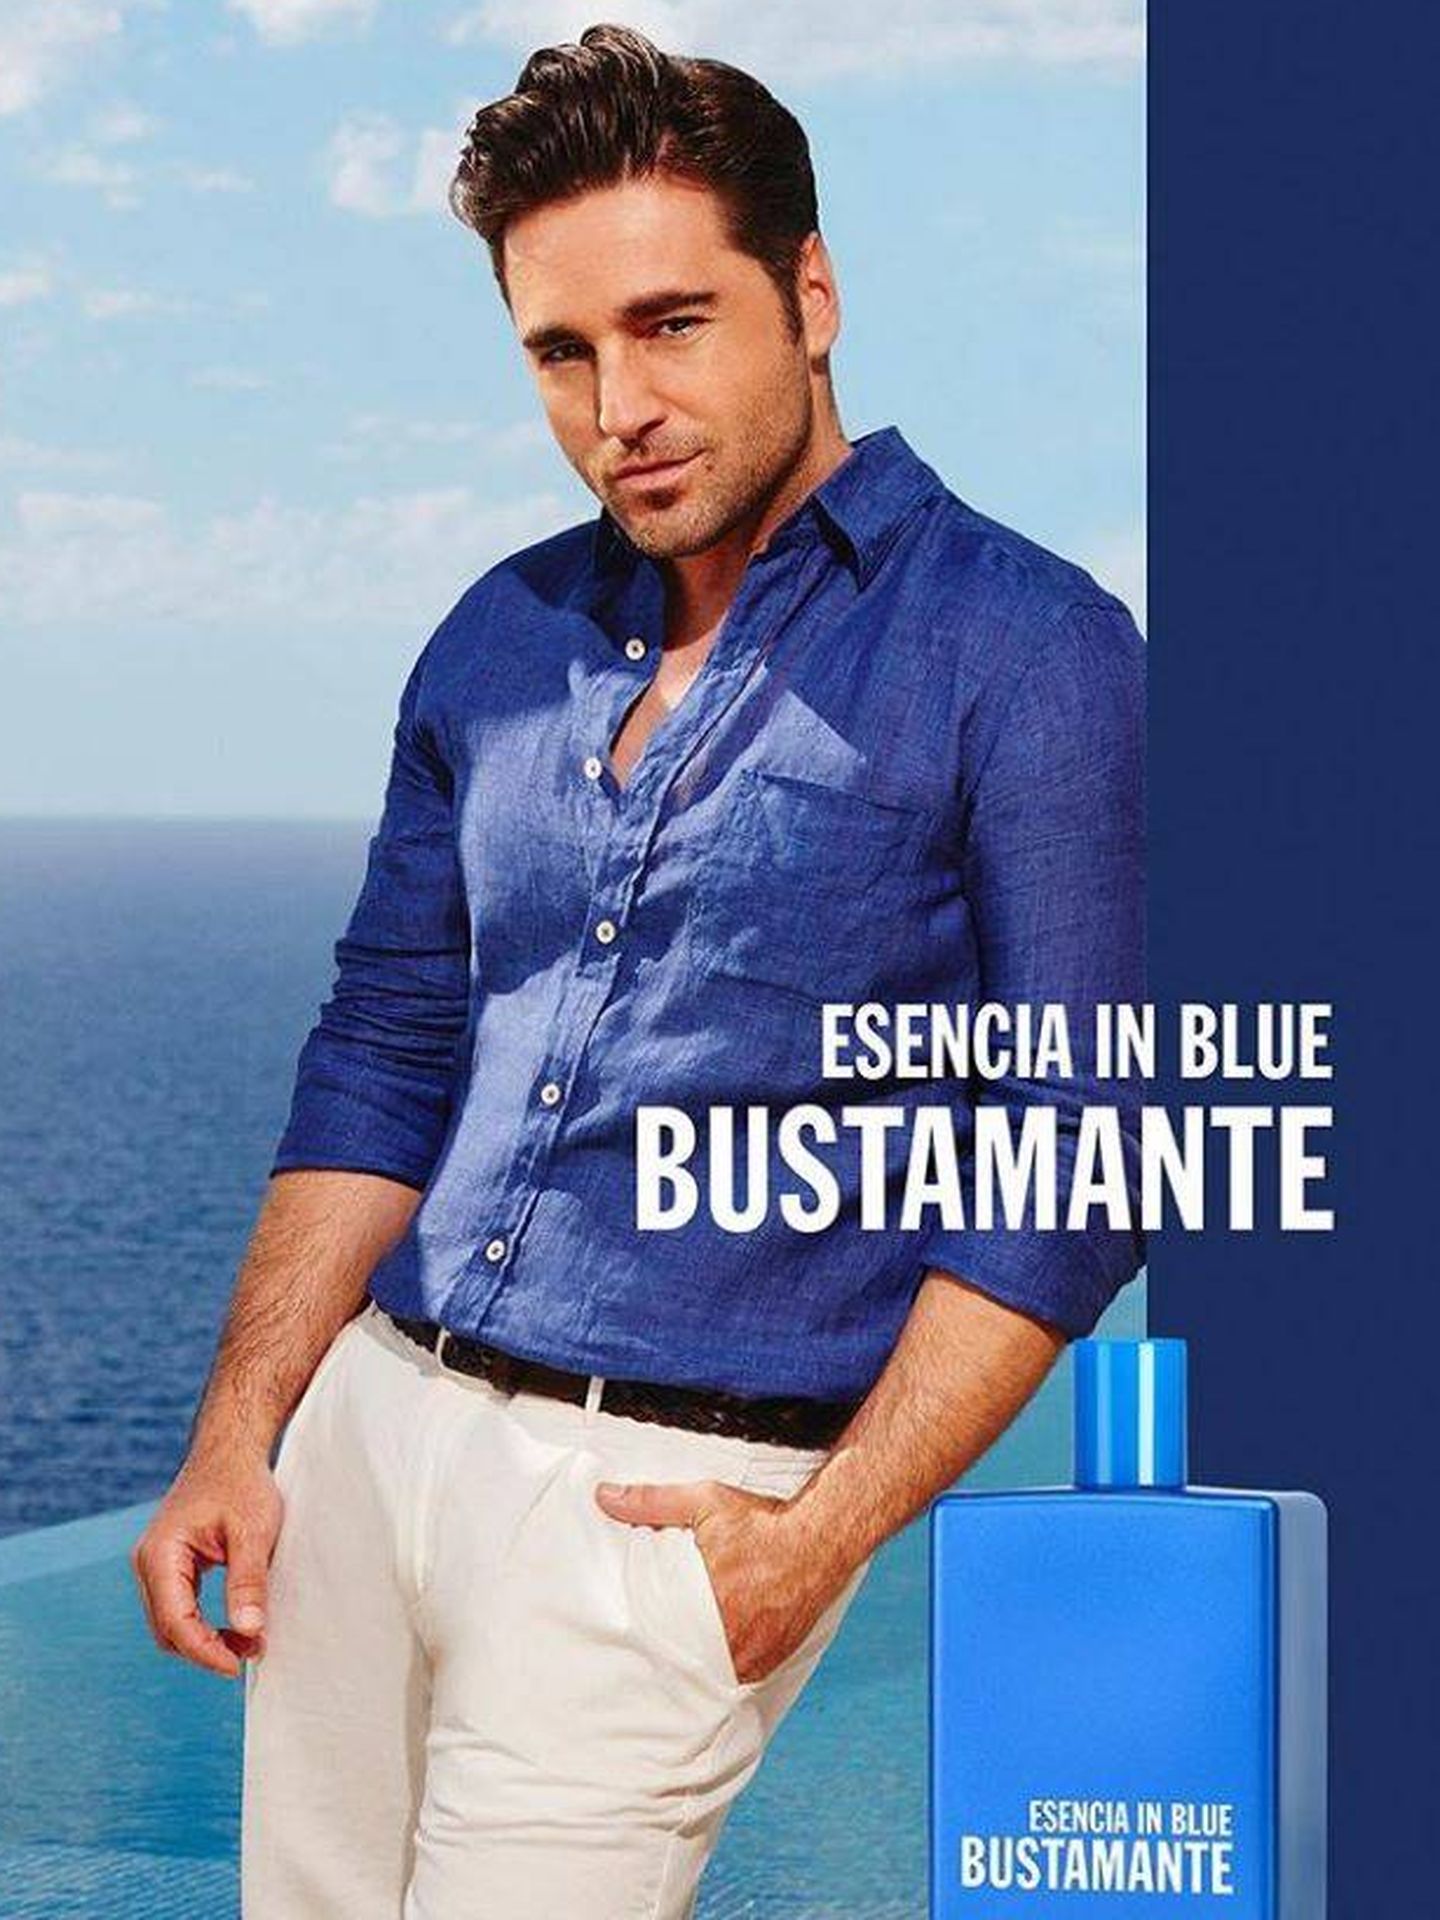 David Bustamante en el anuncio de su perfume. (Imagen de la marca)